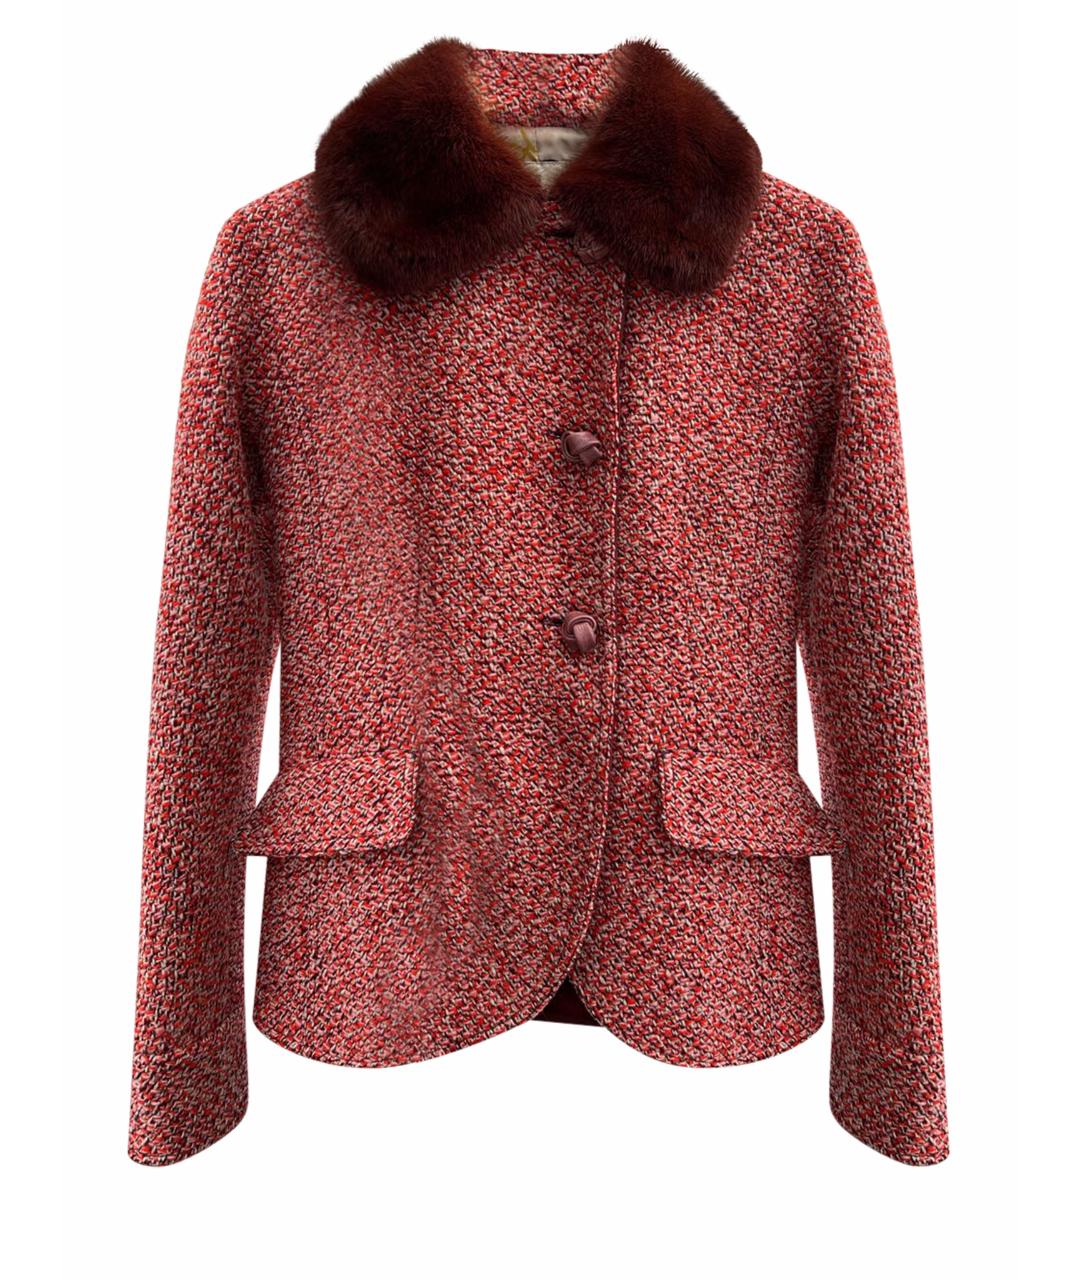 TRUSSARDI Бордовый шерстяной жакет/пиджак, фото 1